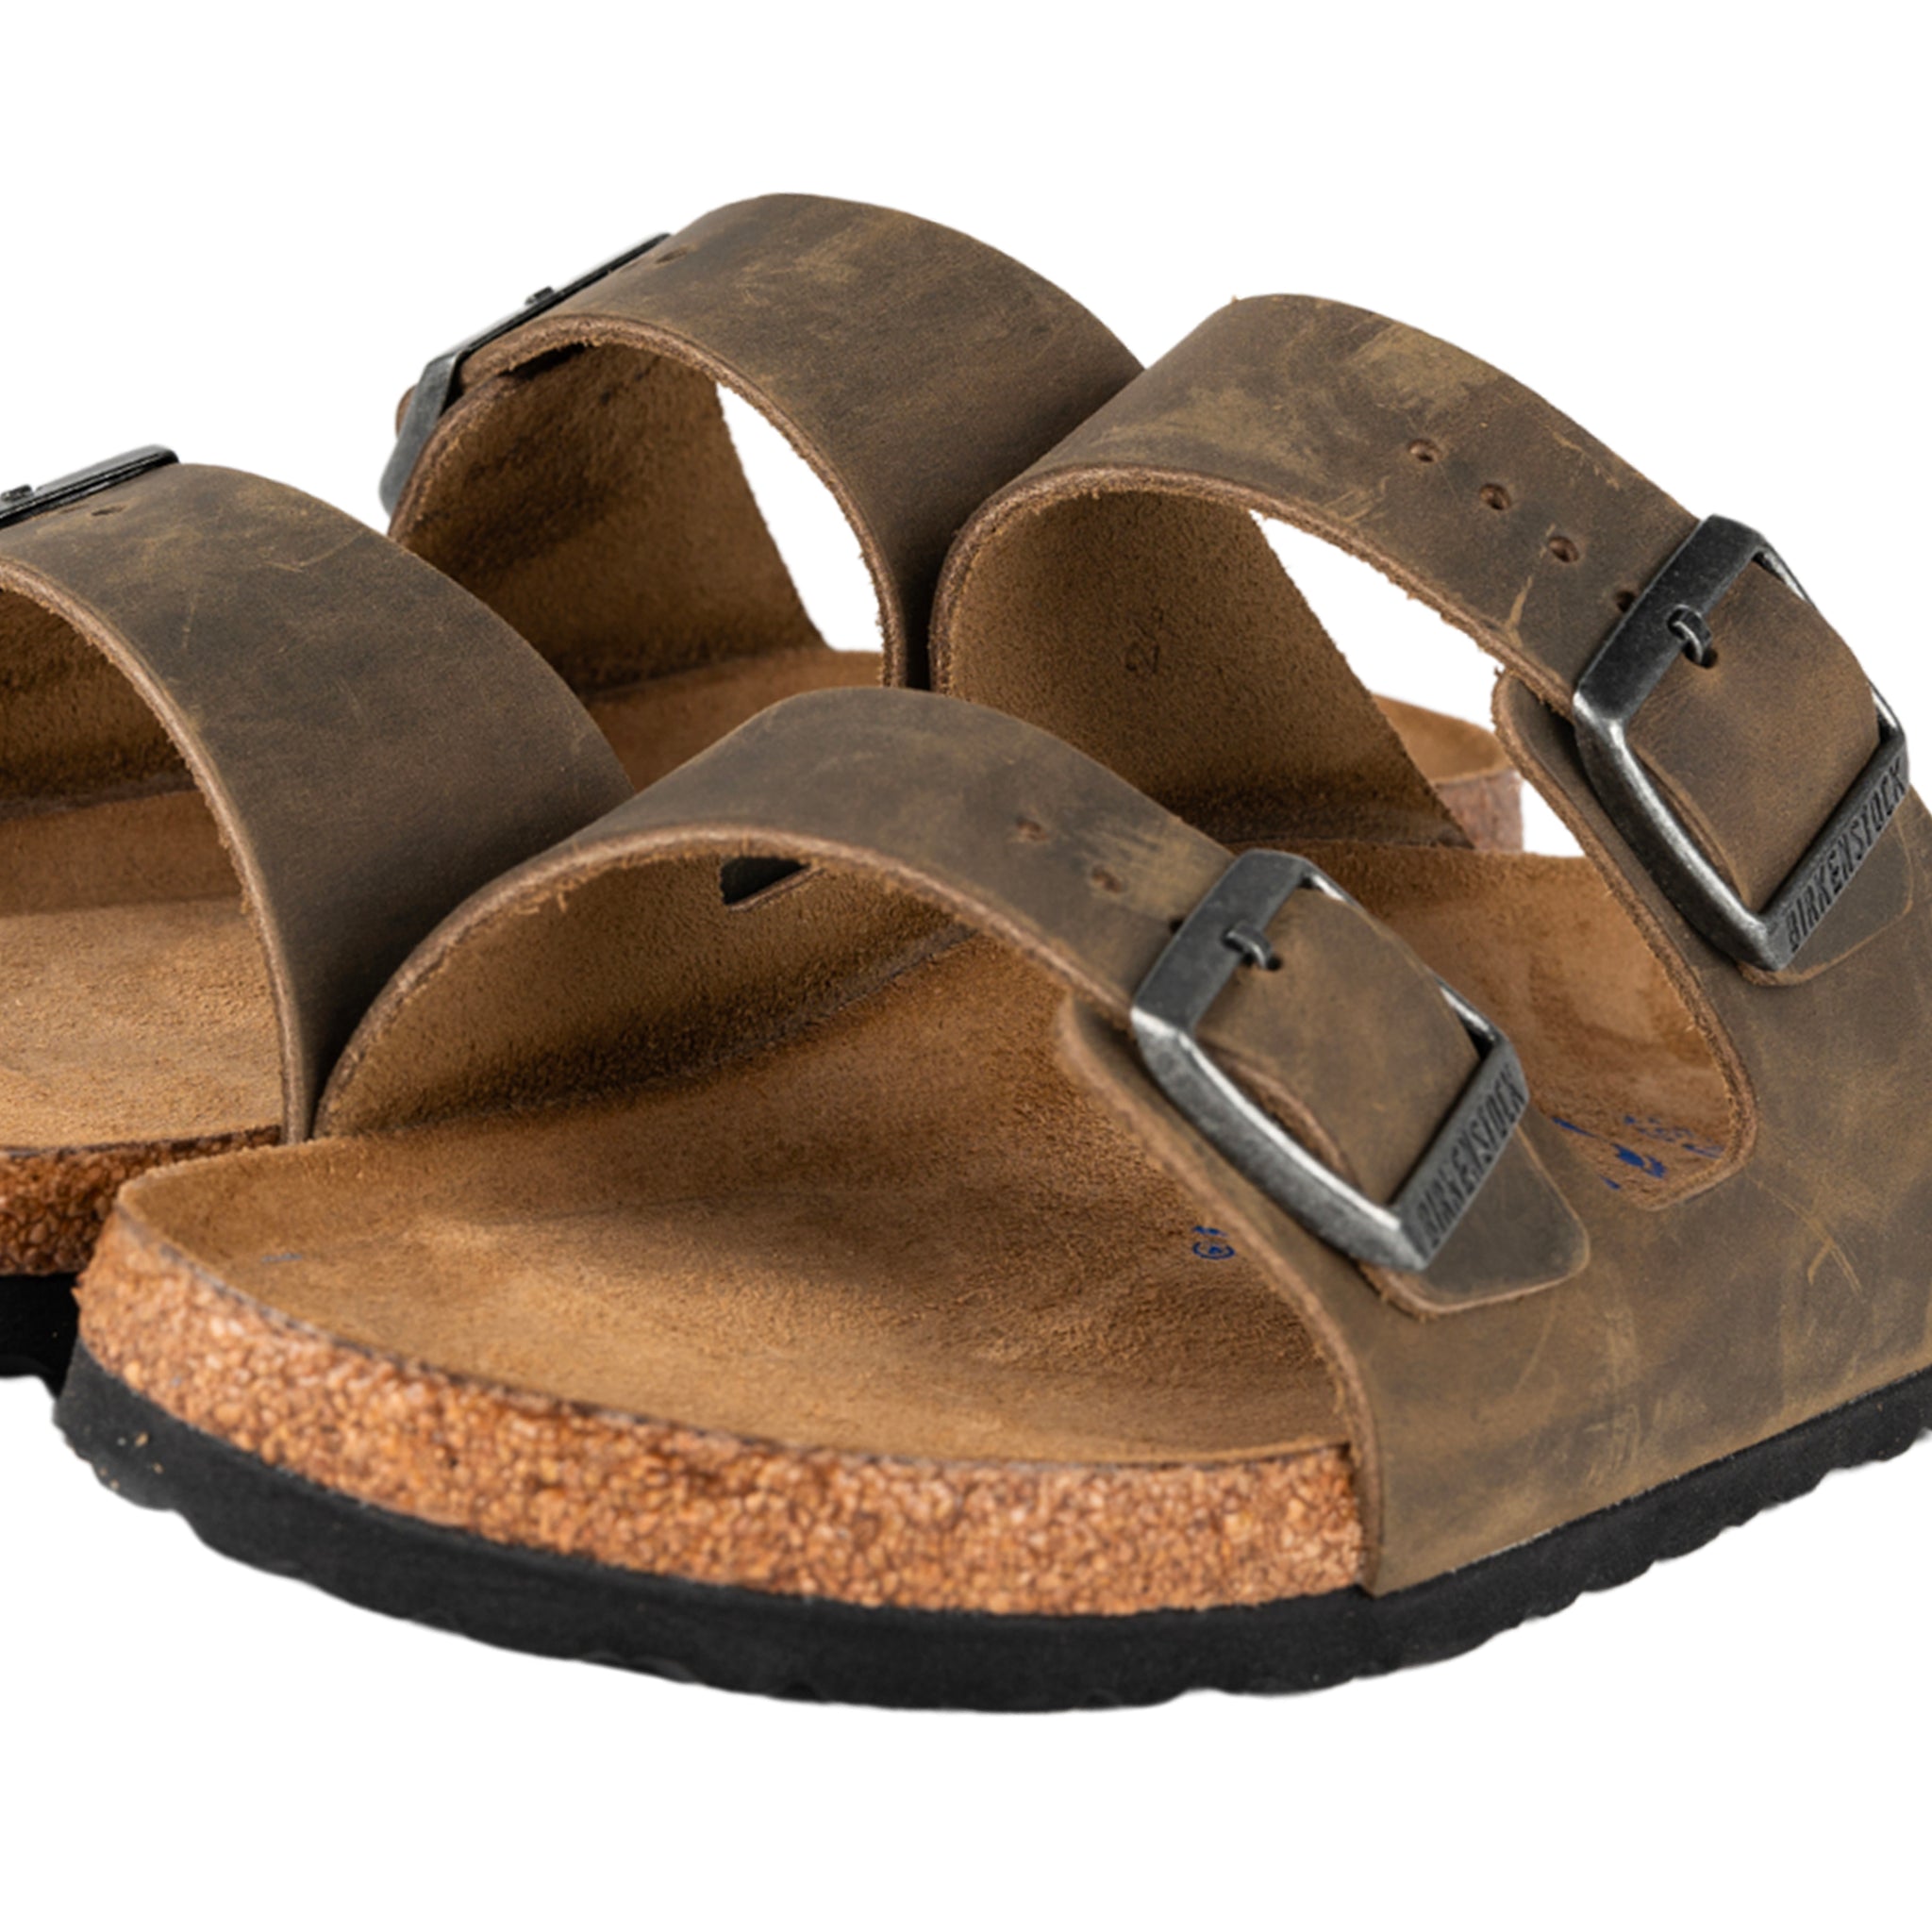 Arizona faded sandalo khaki in pelle oliata